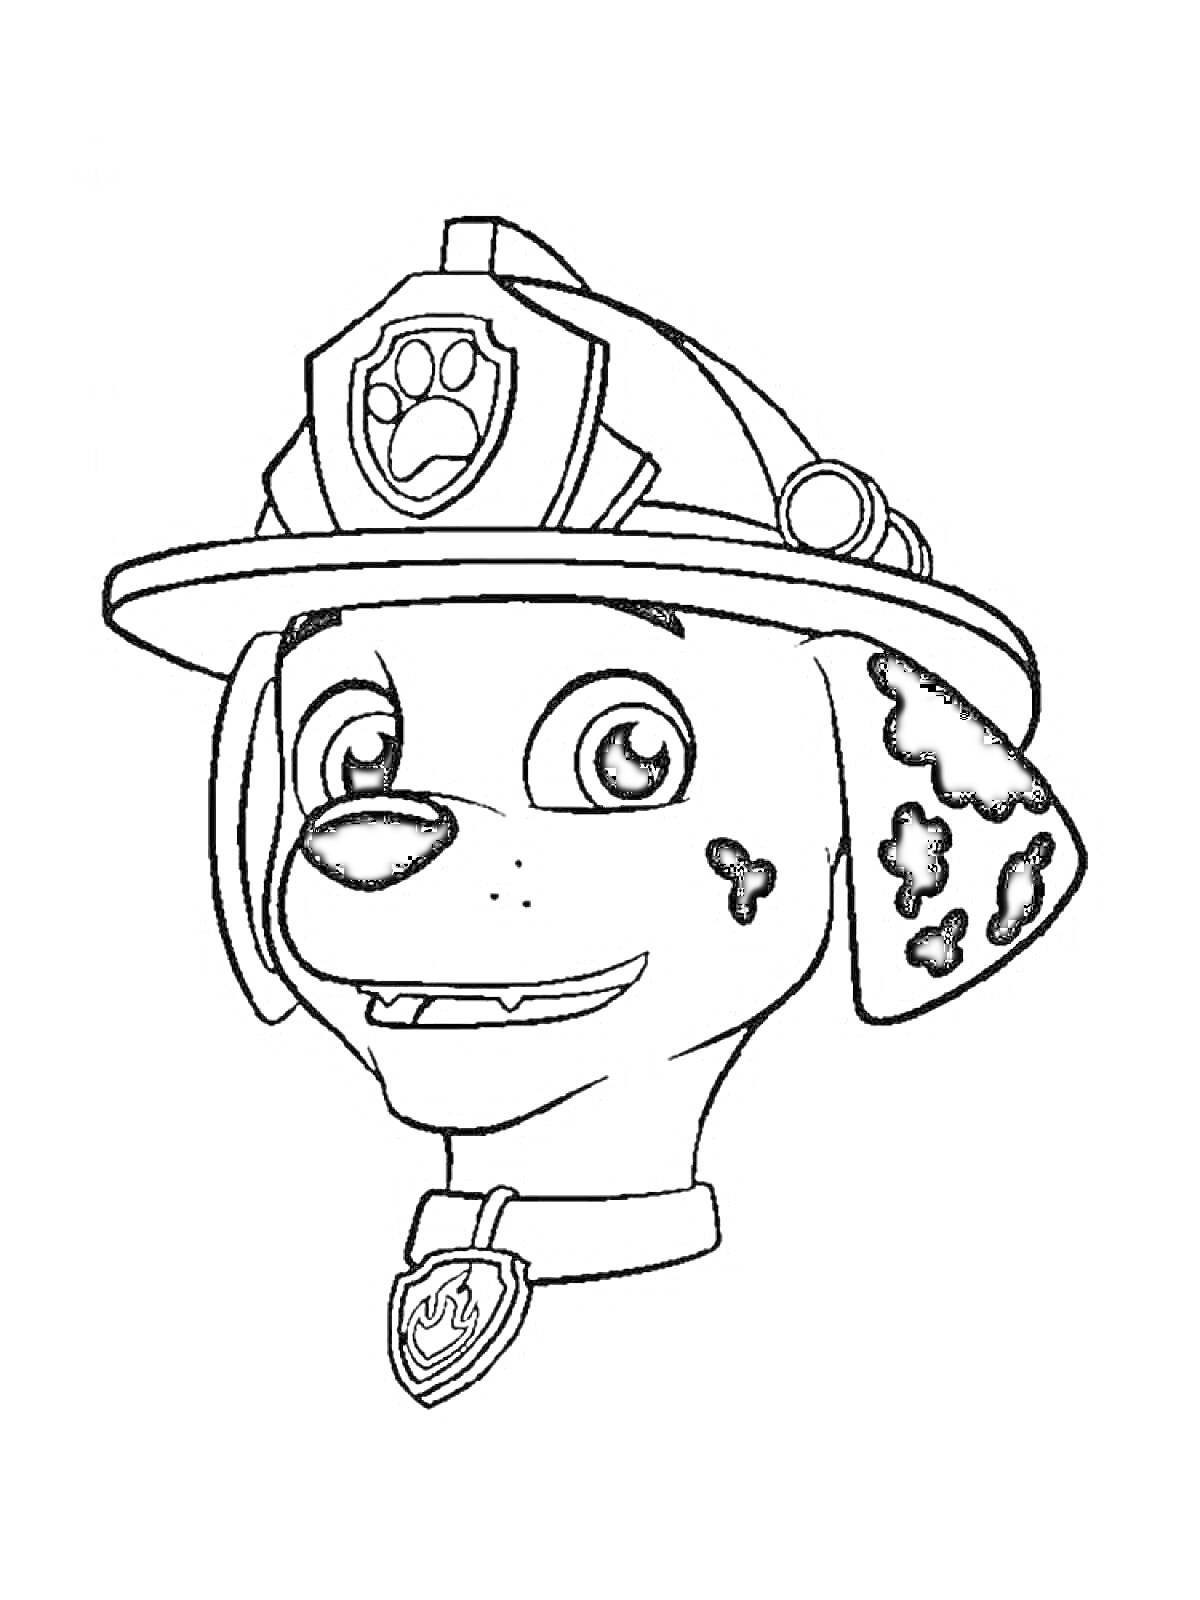 Раскраска Голова мультяшного далматинца в пожарной каске с эмблемой лапы и ошейником с медальоном